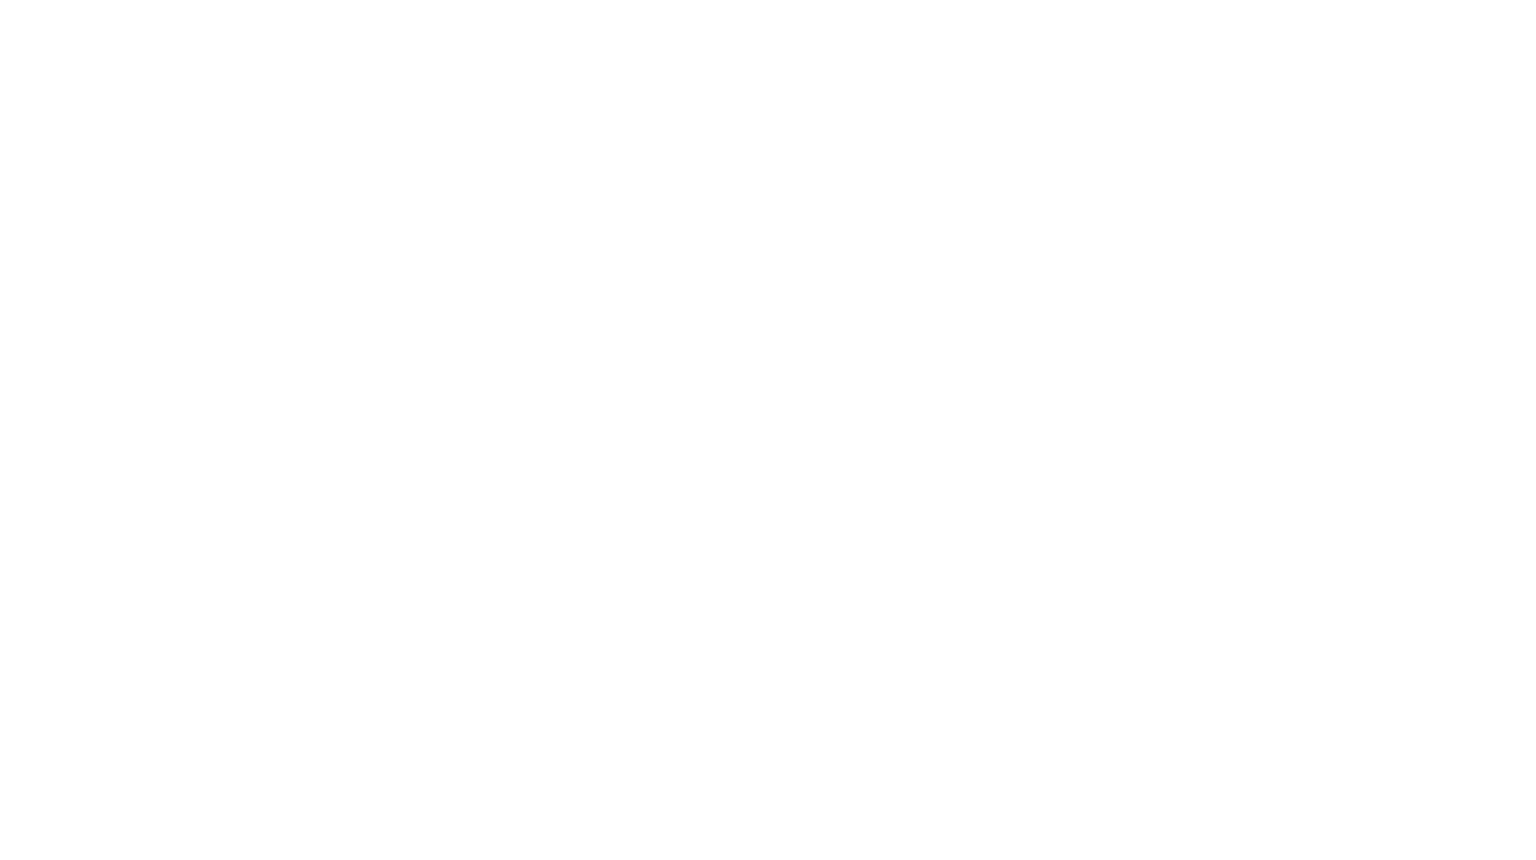 Austin Rattler Run Leadville Race Series